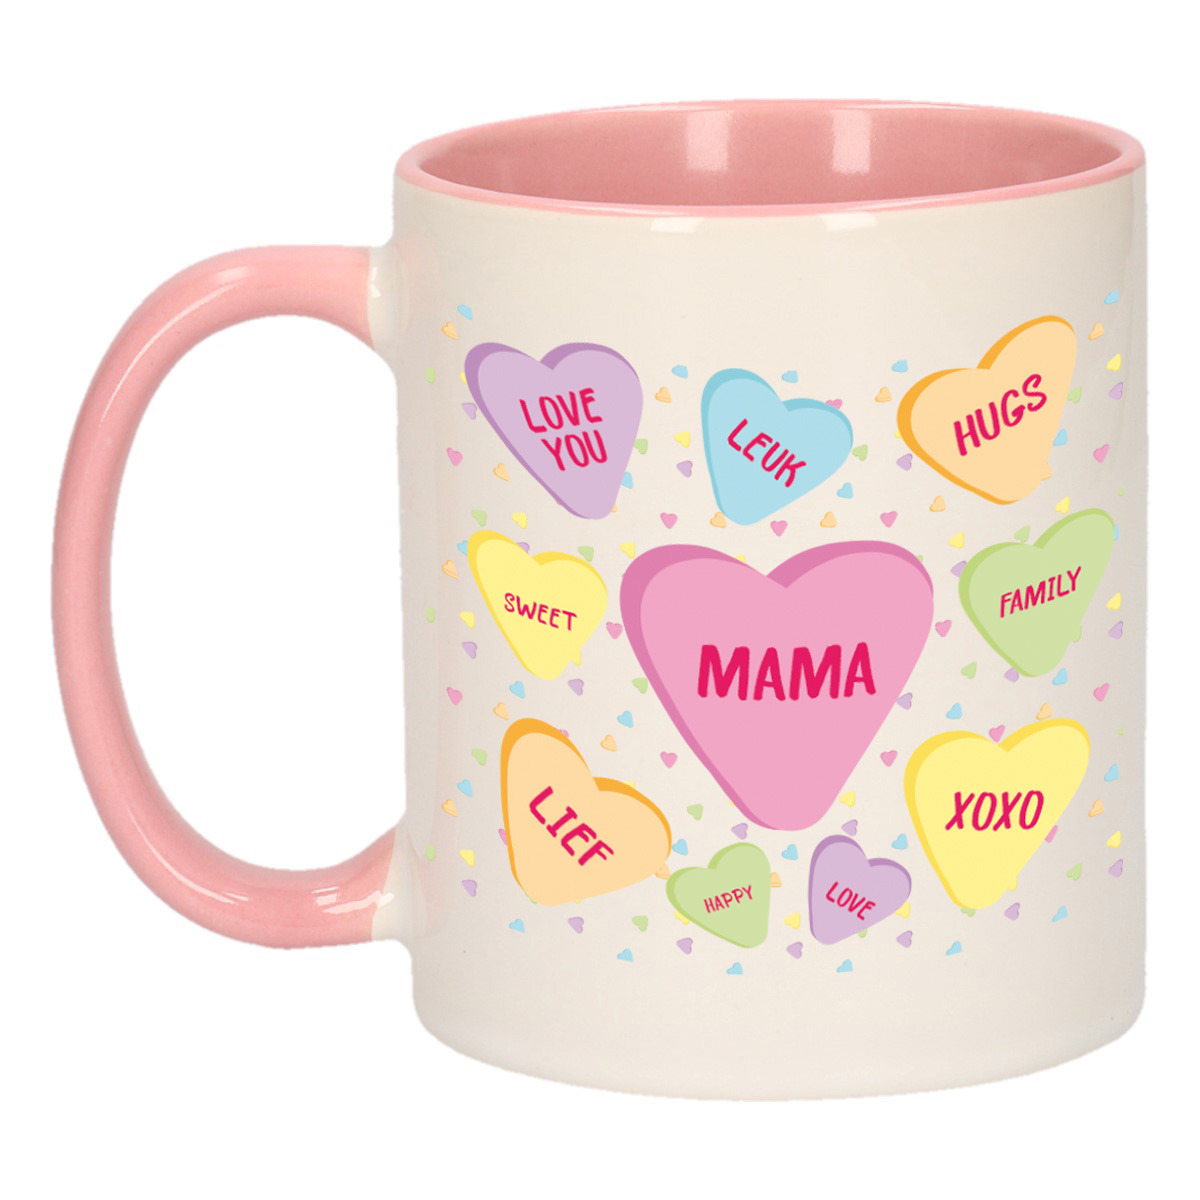 Moederdag cadeau koffiemok hartjes snoepjes roze mok met tekst verjaardag mama-moeder